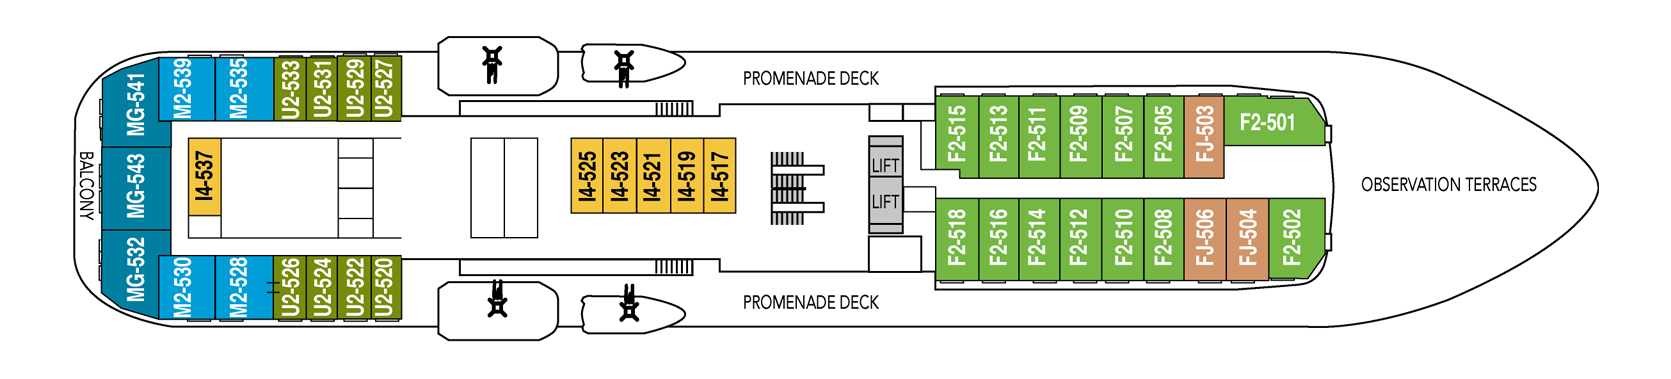 1548636376.2469_d270_Hurtigruten MS Fram Deck Plans Deck 5.png